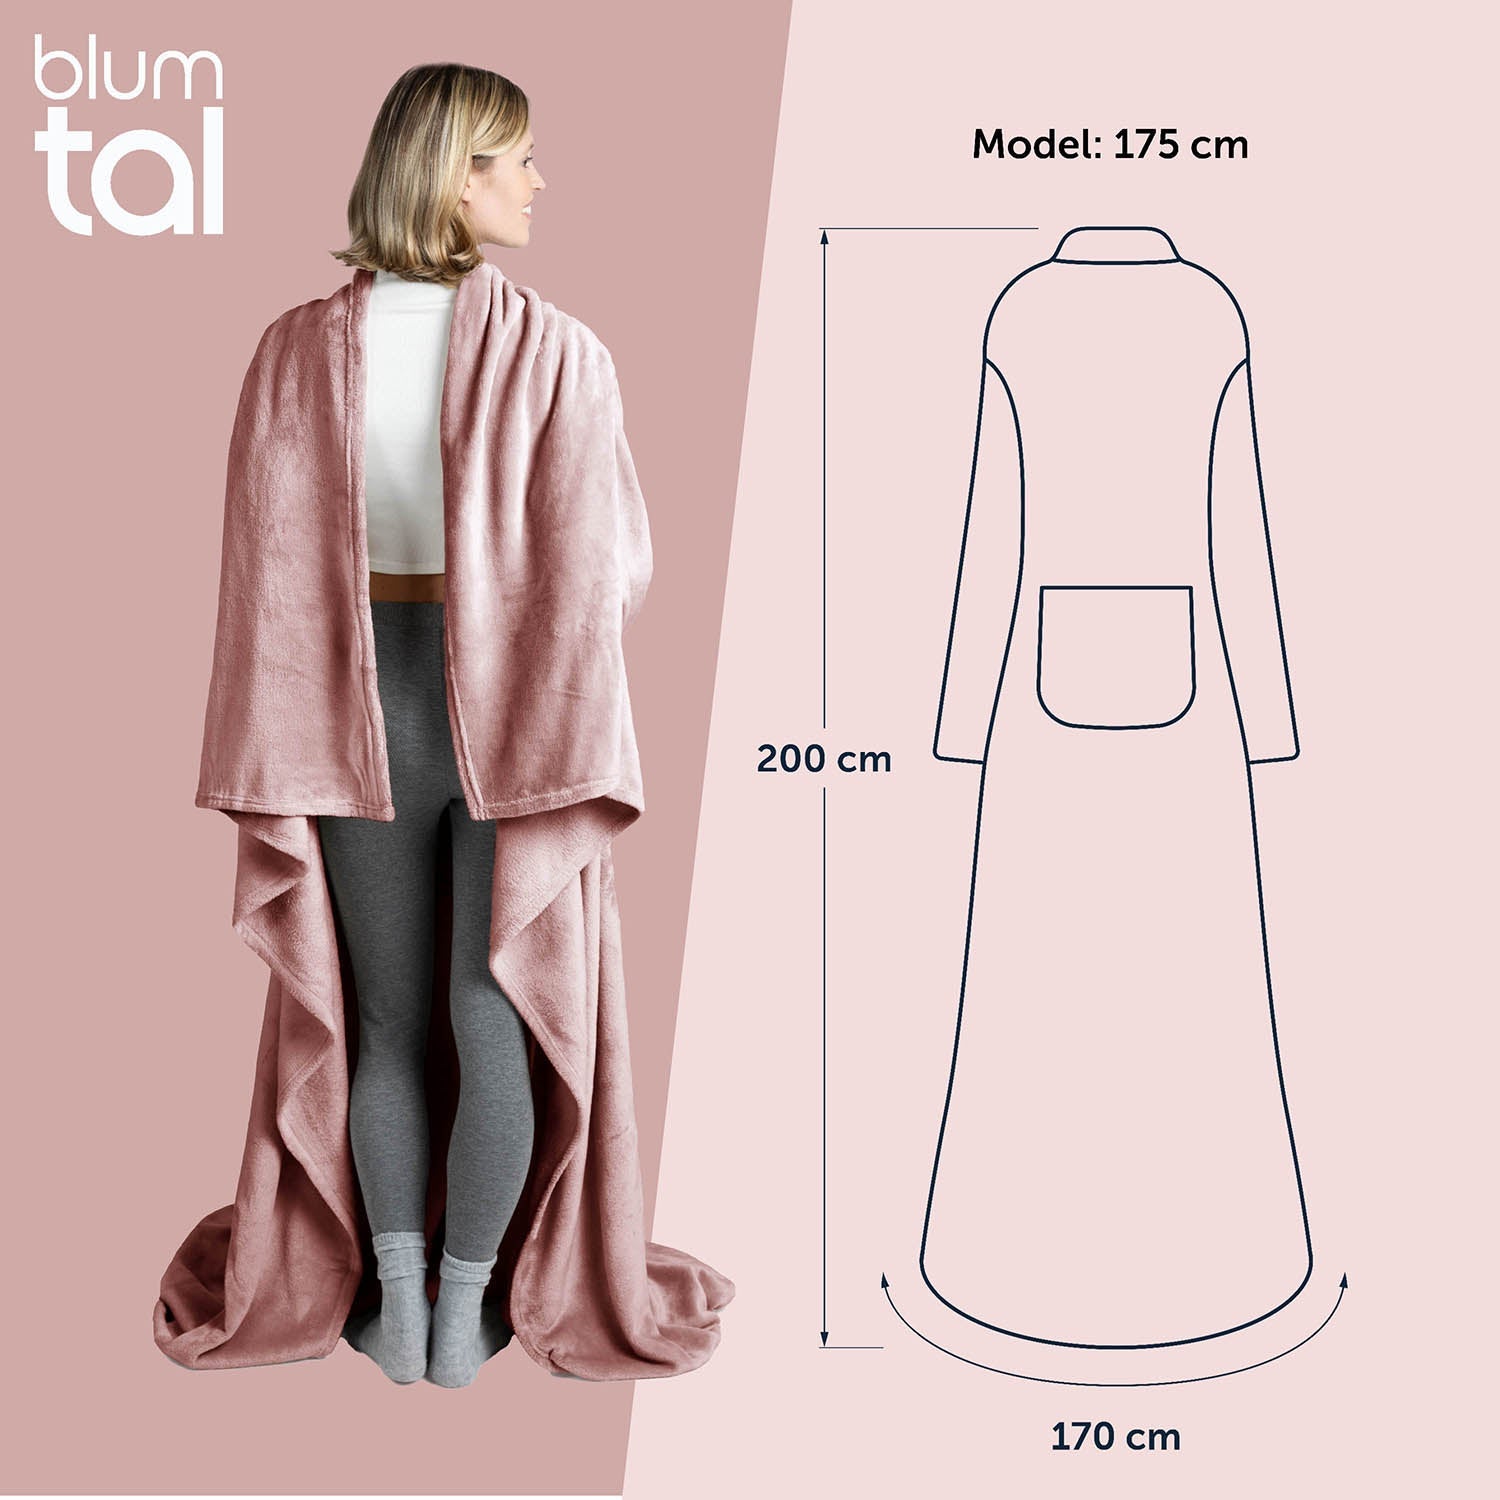 Frau von hinten in einem rosa flauschigen Kleidungsstück neben einer Skizze mit Maßangaben zur Größe des Kleidungsstücks und der Körpergröße des Models.